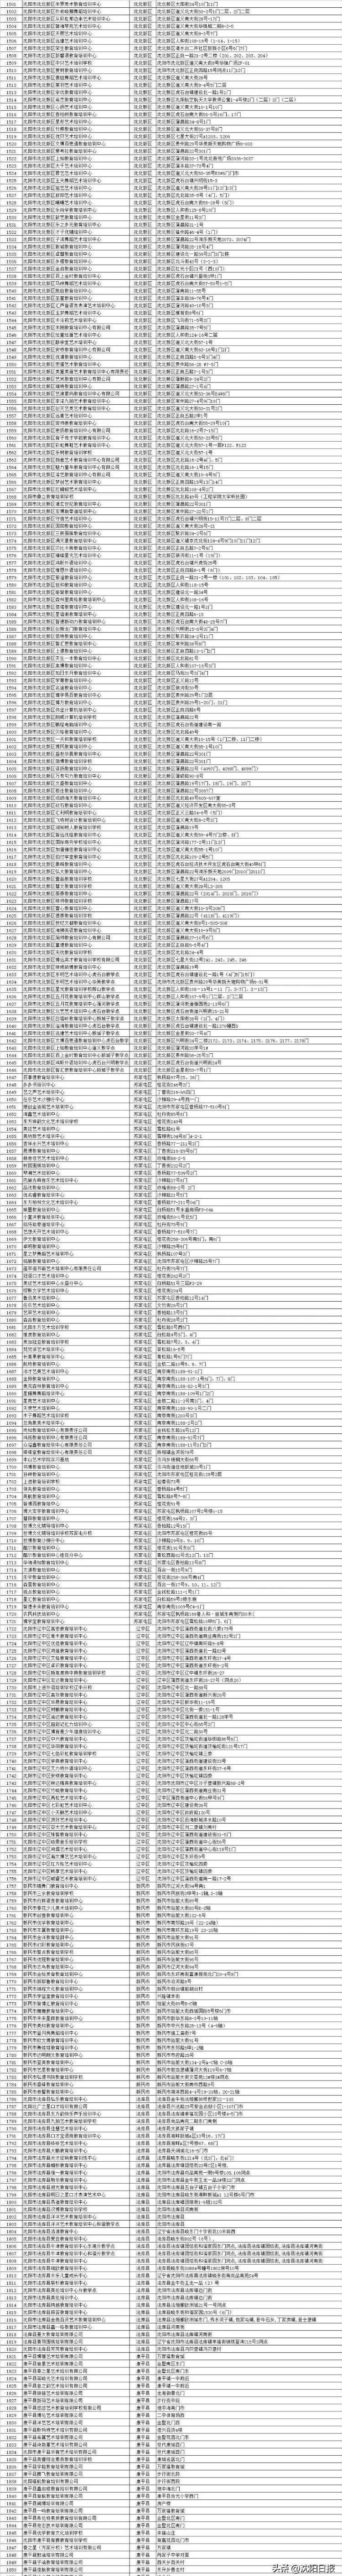 沈阳市教育局公布全市校外培训机构“白名单”